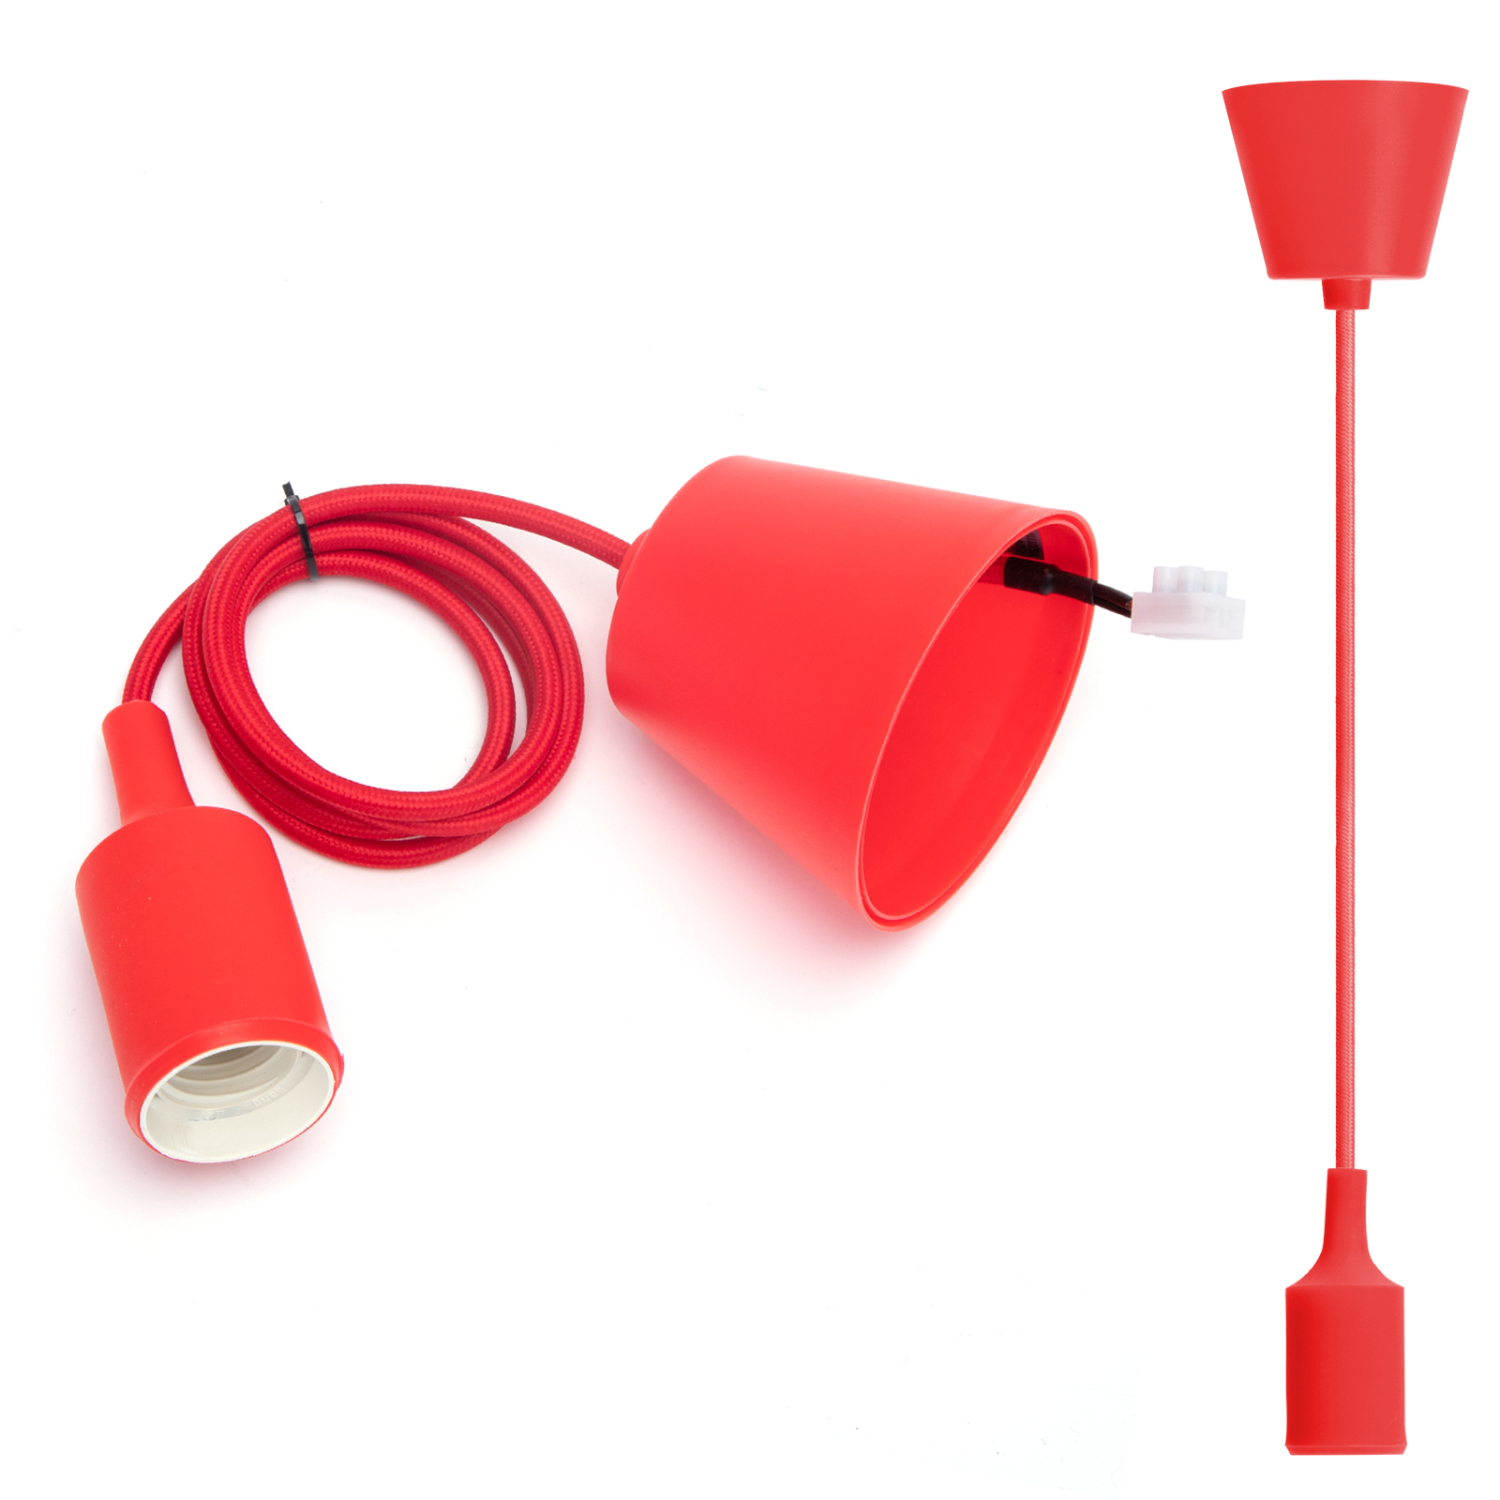 Aigostar Portalámparas Colgante de Plástico E27,100cm Cable con Soporte de Techo,Accesorios de La Lámpara DIY,Rojo